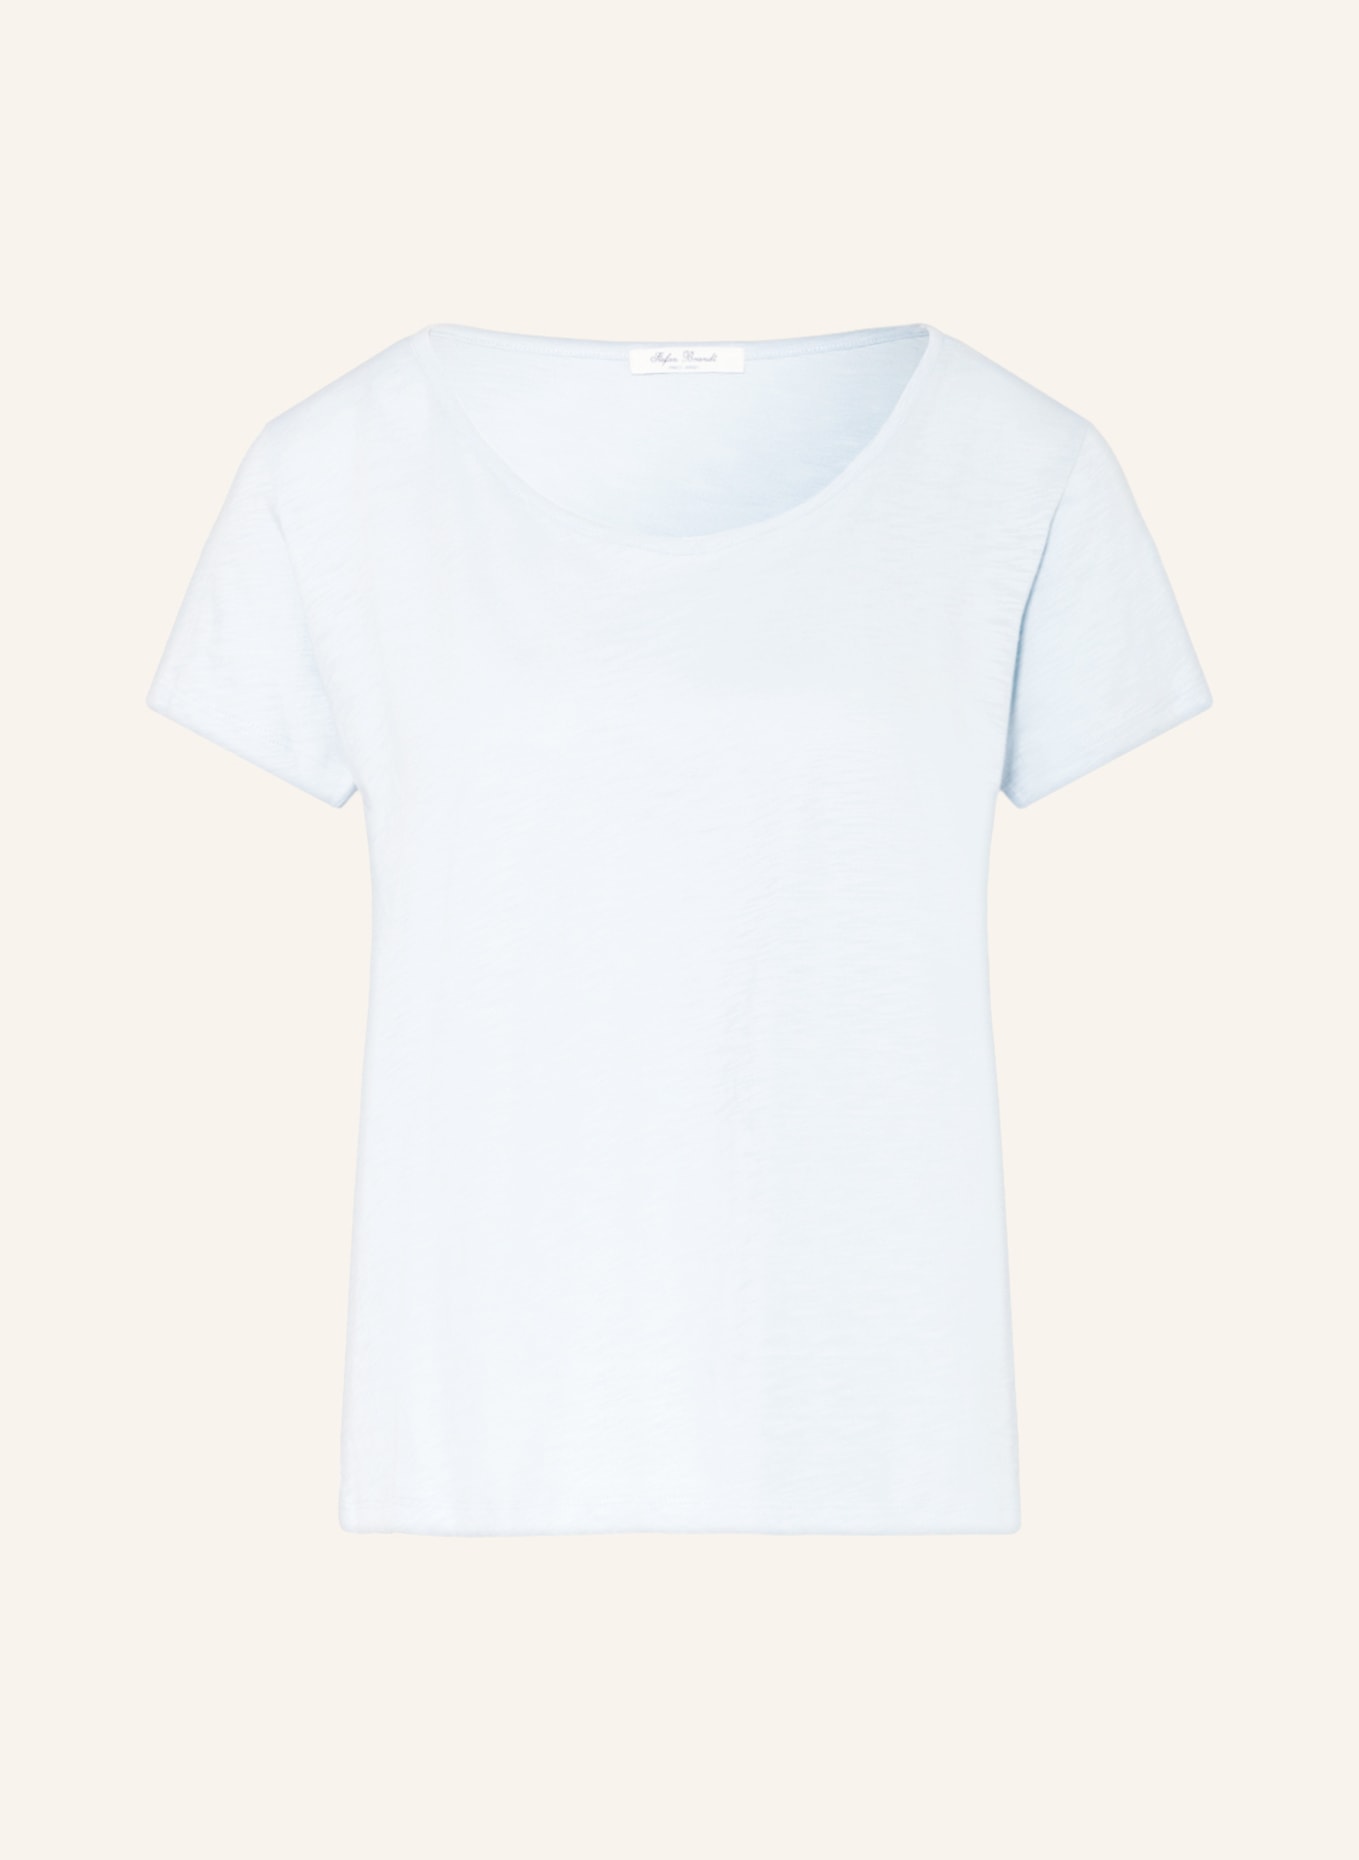 Stefan Brandt T-shirt SIENNA, Color: LIGHT BLUE (Image 1)